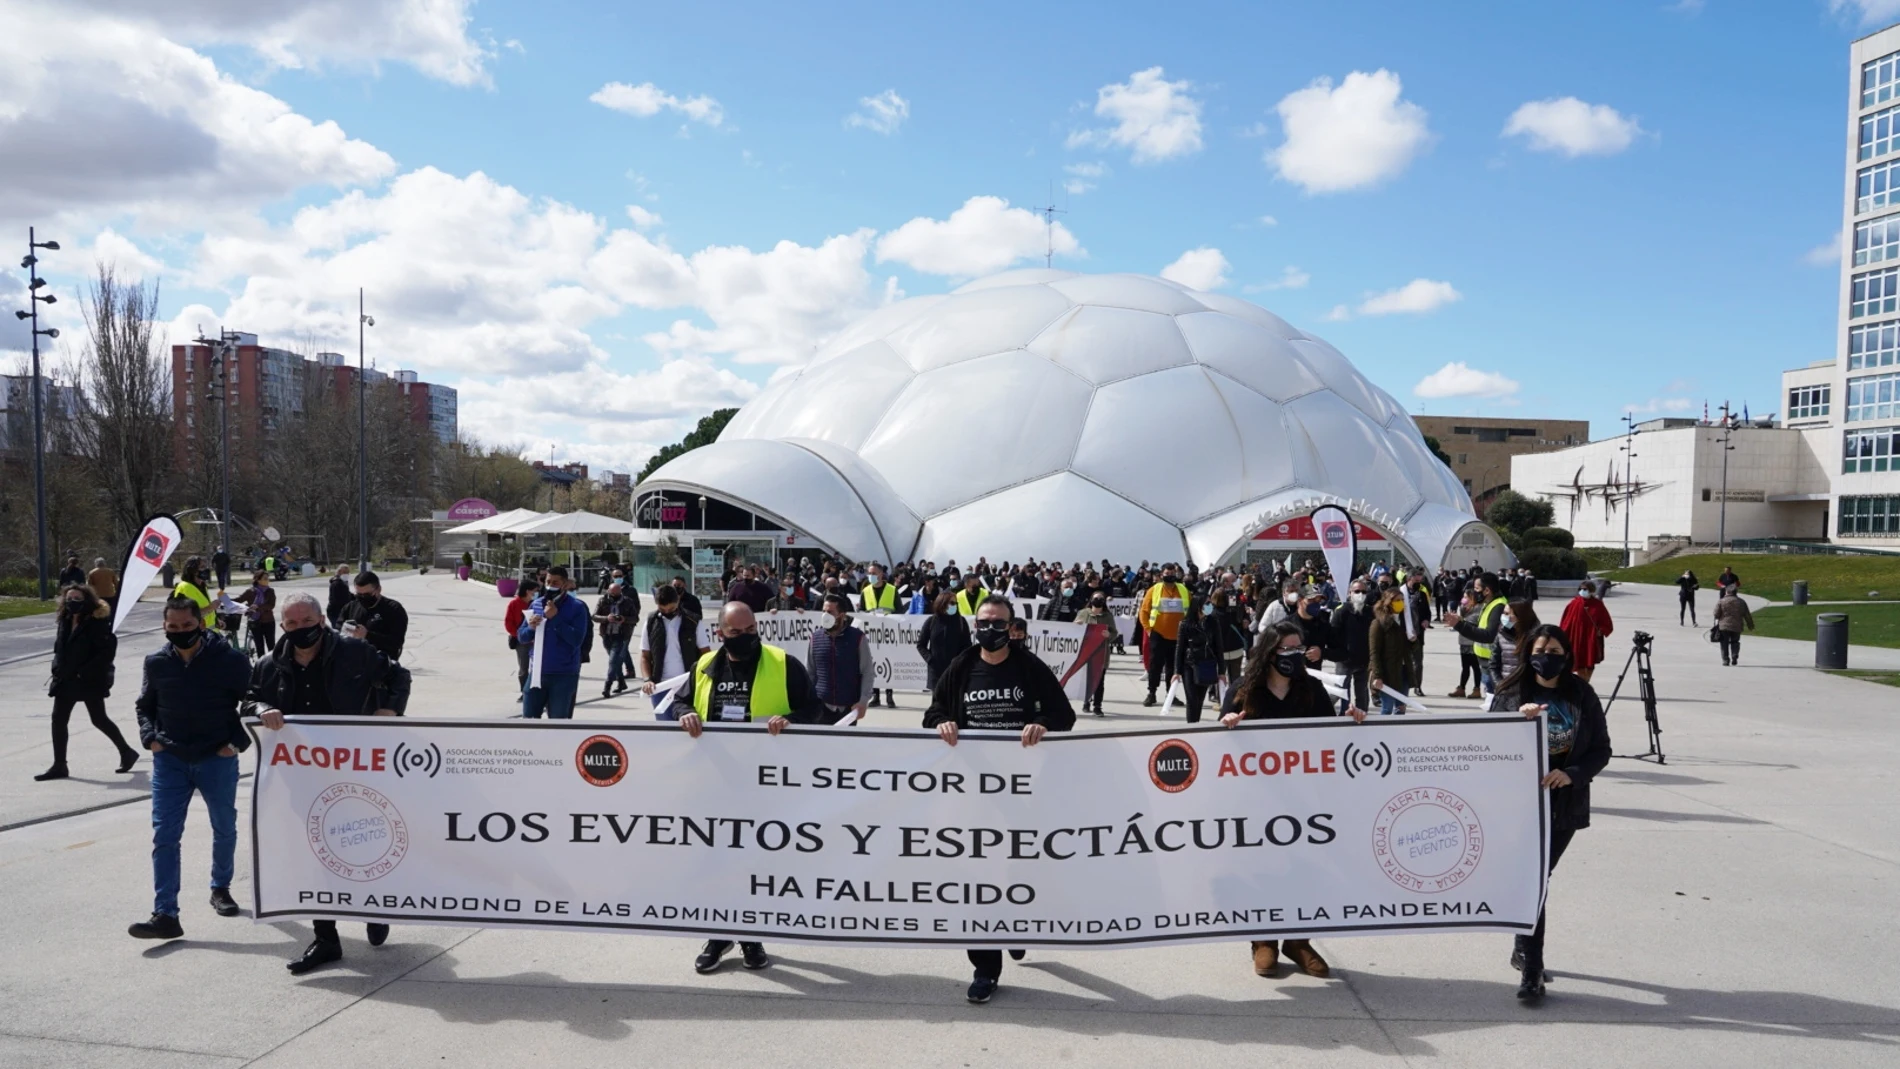 La Movilización Unida de Trabajadores del Espectáculo (MUTE) se manifiesta en Valladolid para "salvar la cultura" y reclamar a la Administración las pérdidas sufridas durante la pandemia.